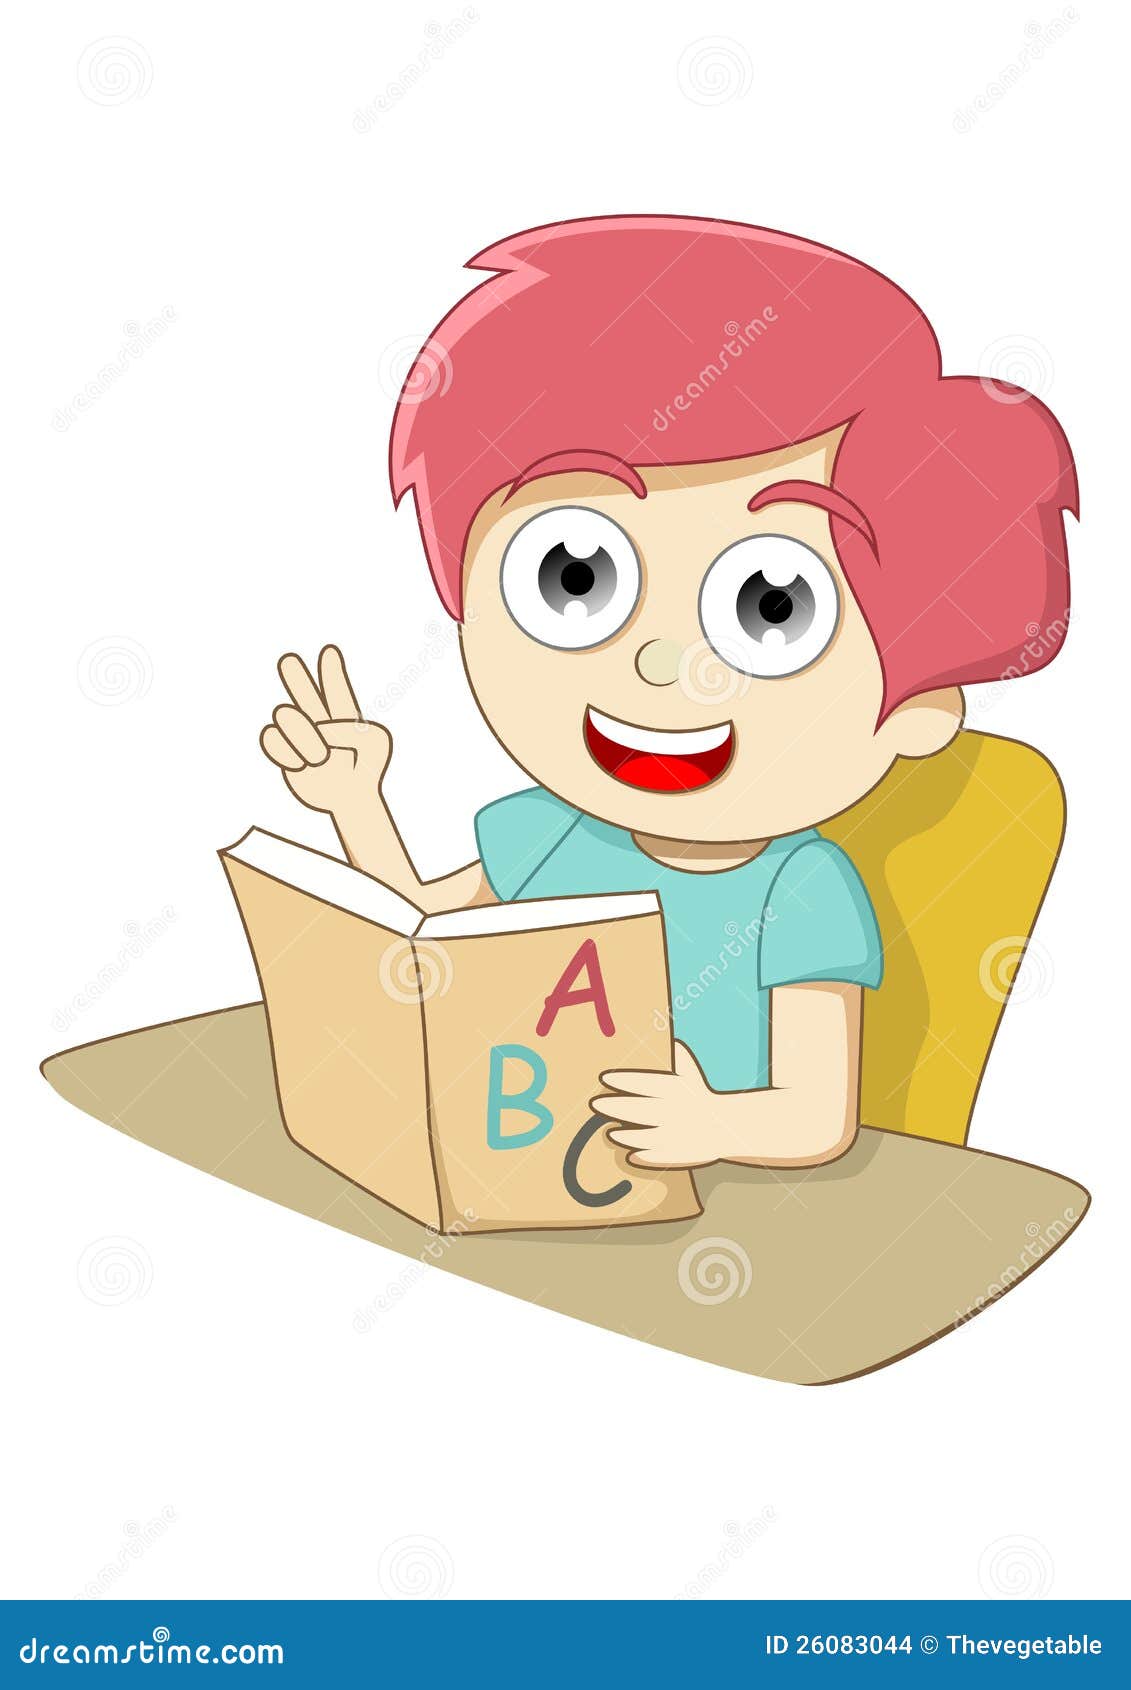 Apprendimento. Un bambino che sta imparando l'alfabeto